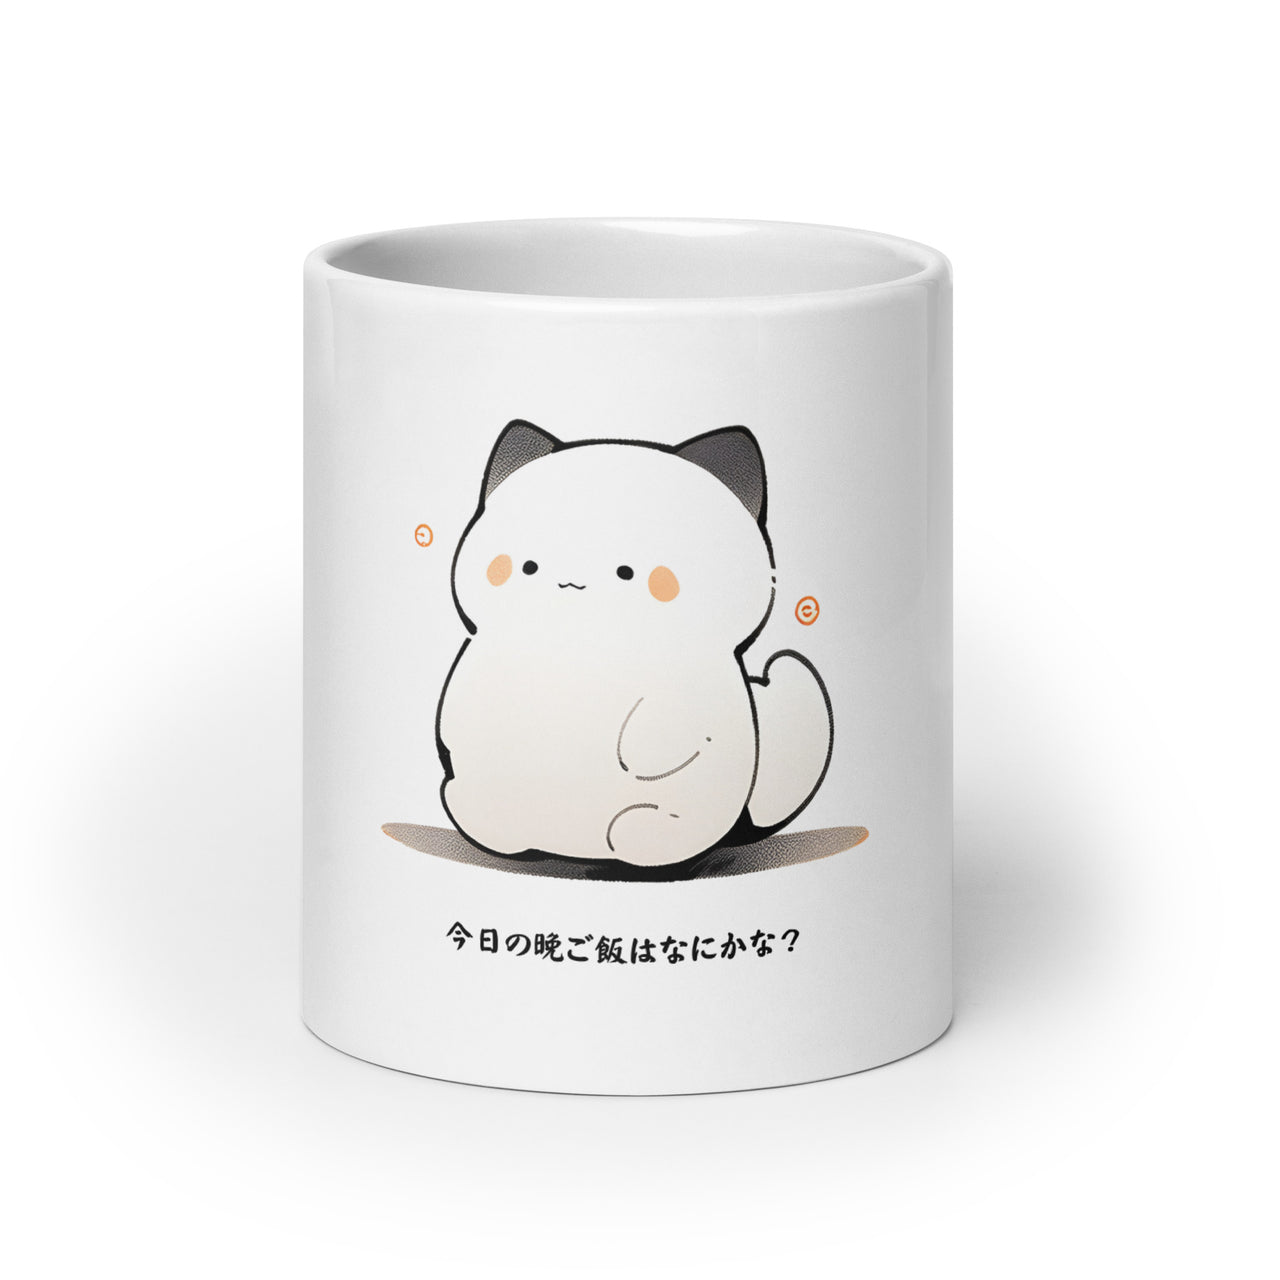 Cute Manga Cat: What's For Supper? White Mug